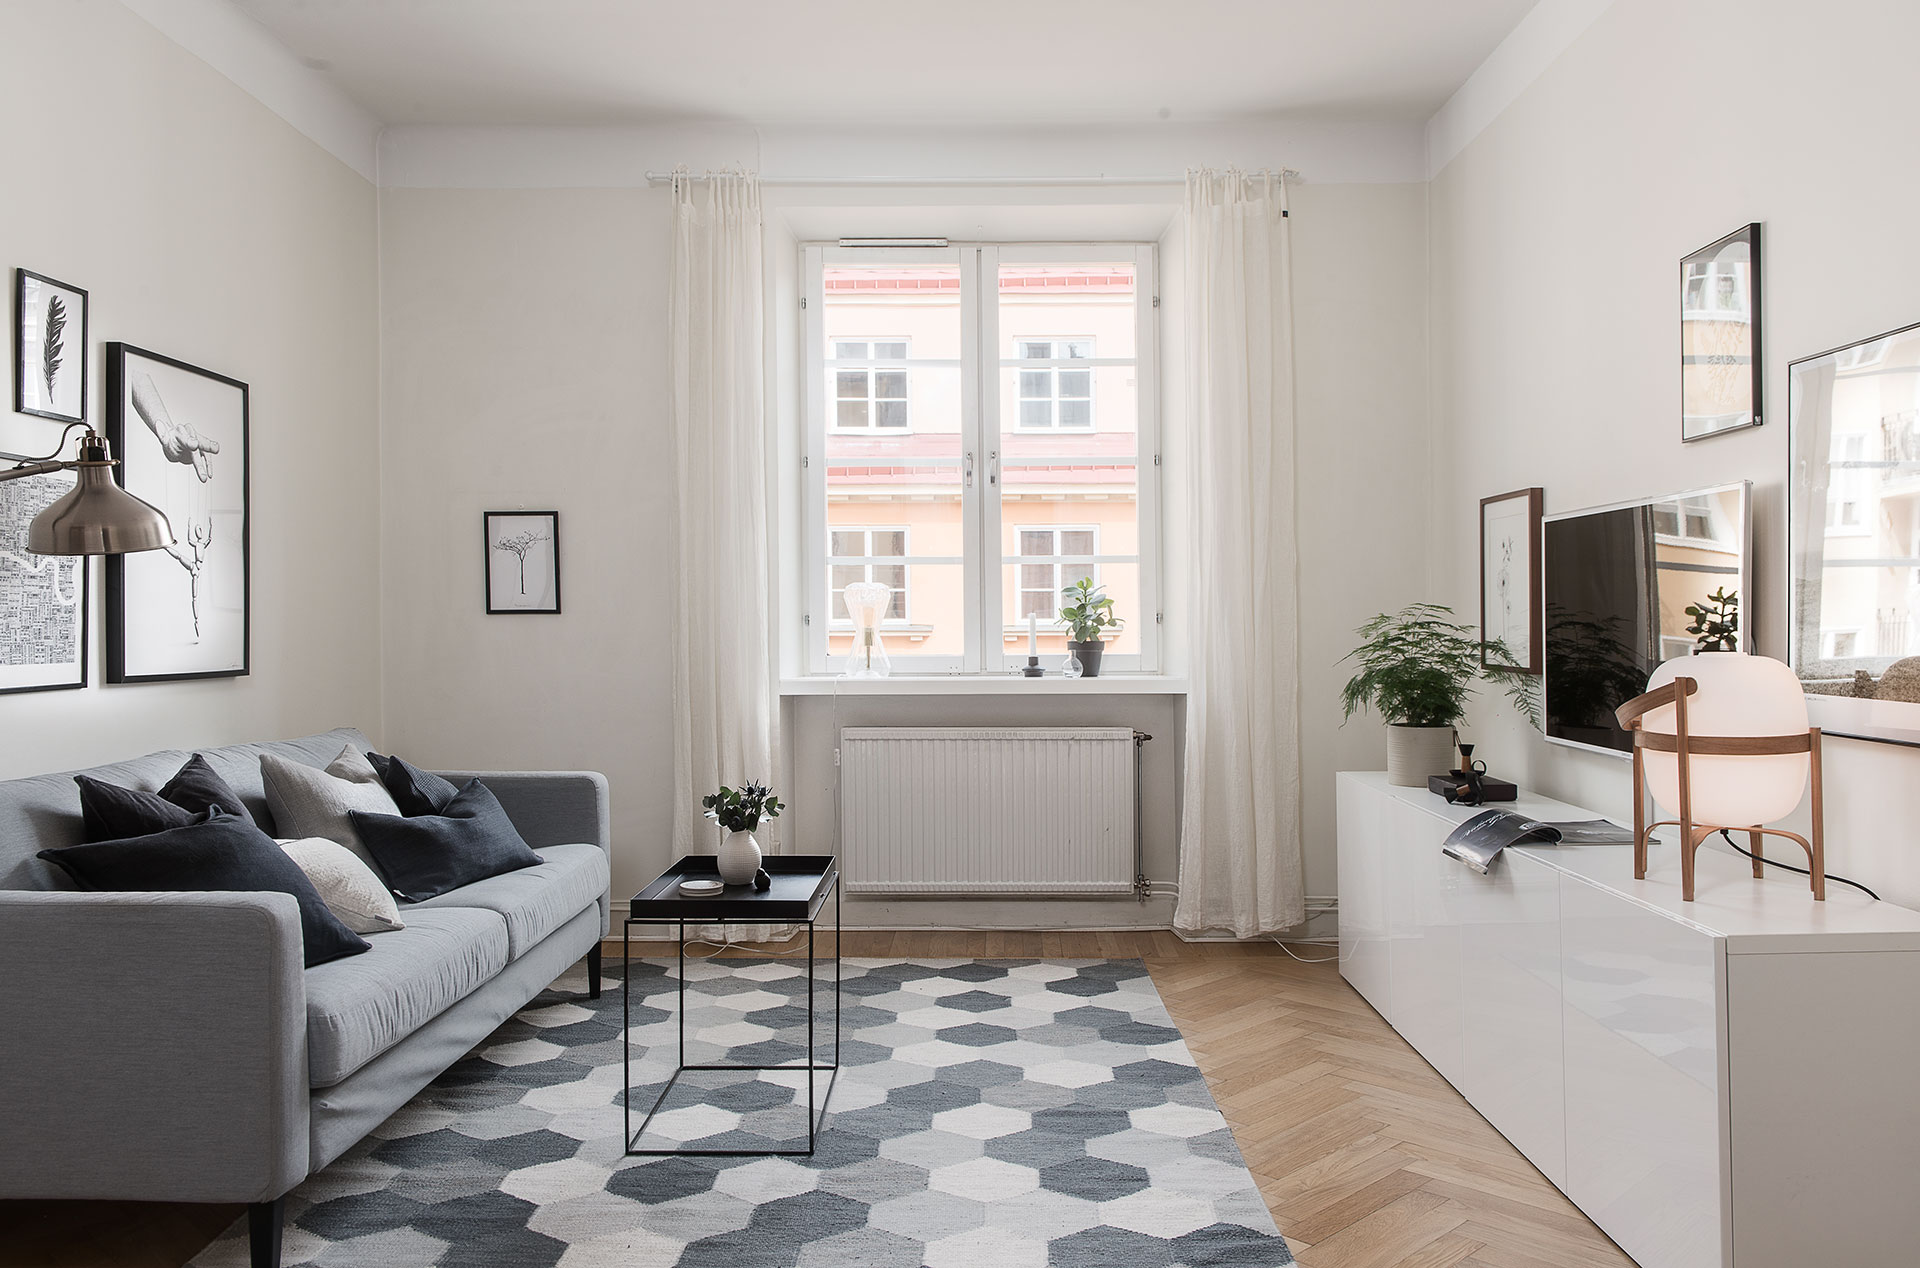 delikatissen venta de pisos limpiar y pintar casa inmobiliarias suecas inmobiliarias estilo nórdico blog decoración ineriores alquiler de pisos 